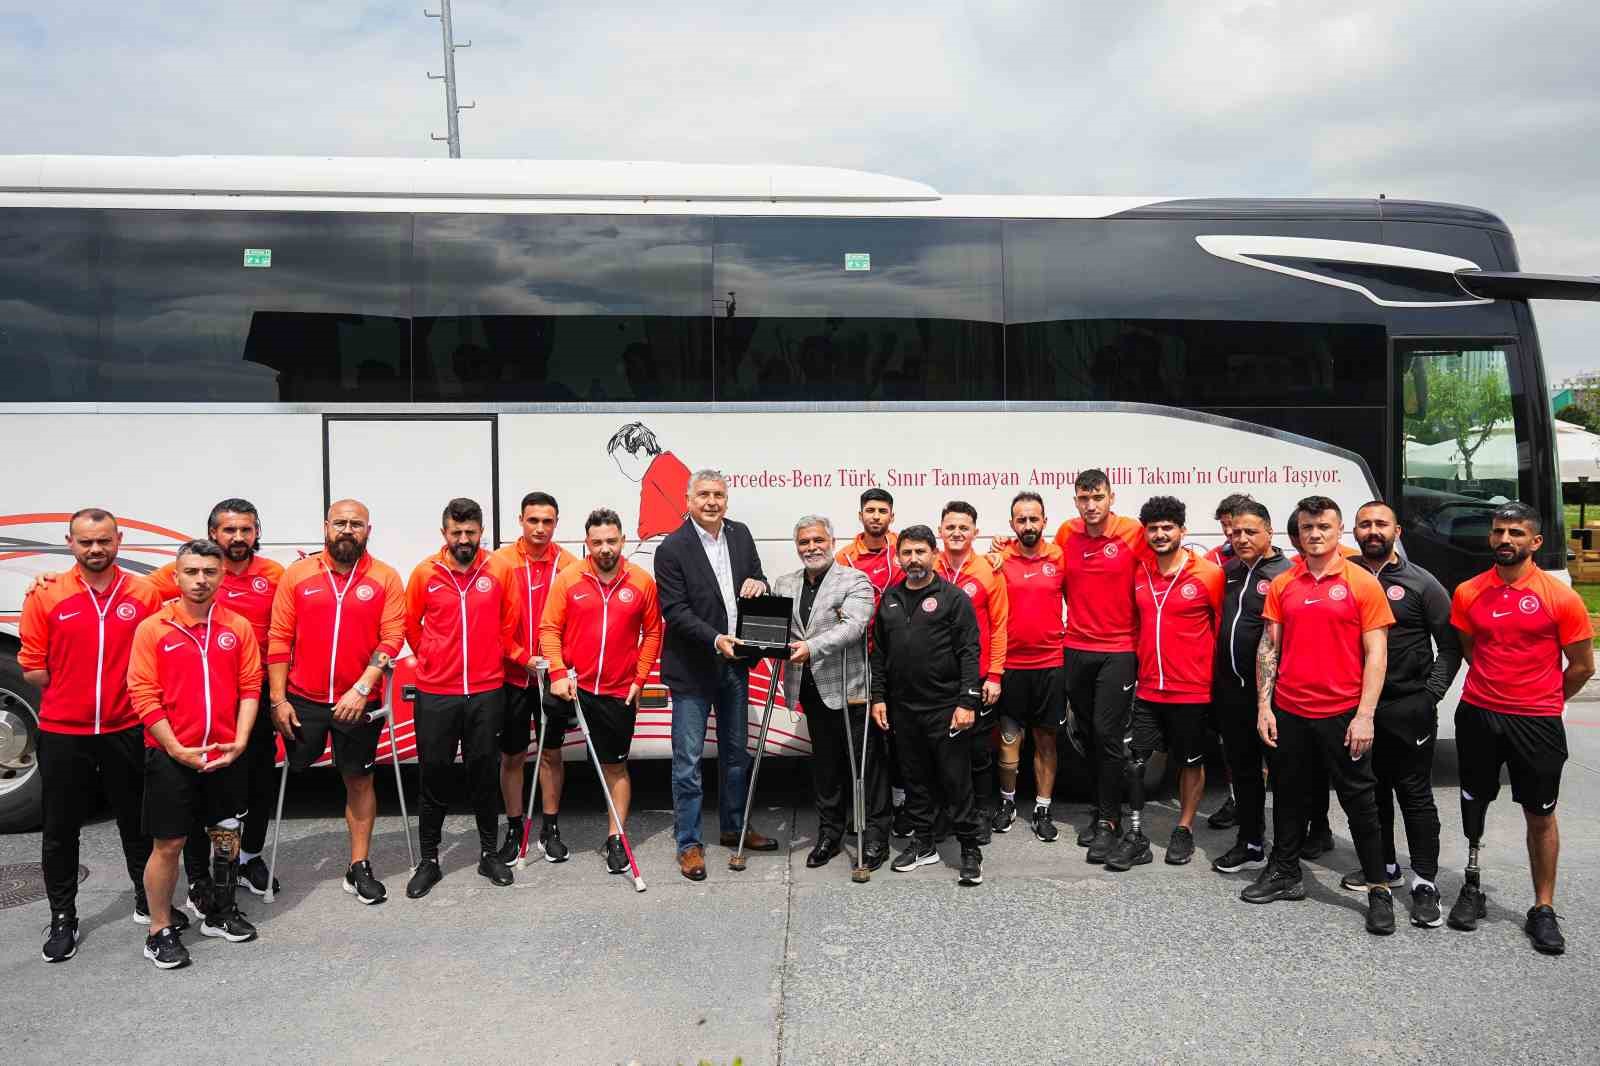 Mercedes-Benz Türk, Ampute Futbol Milli Takımı’nı Hoşdere Otobüs Fabrikası’nda ağırladı
